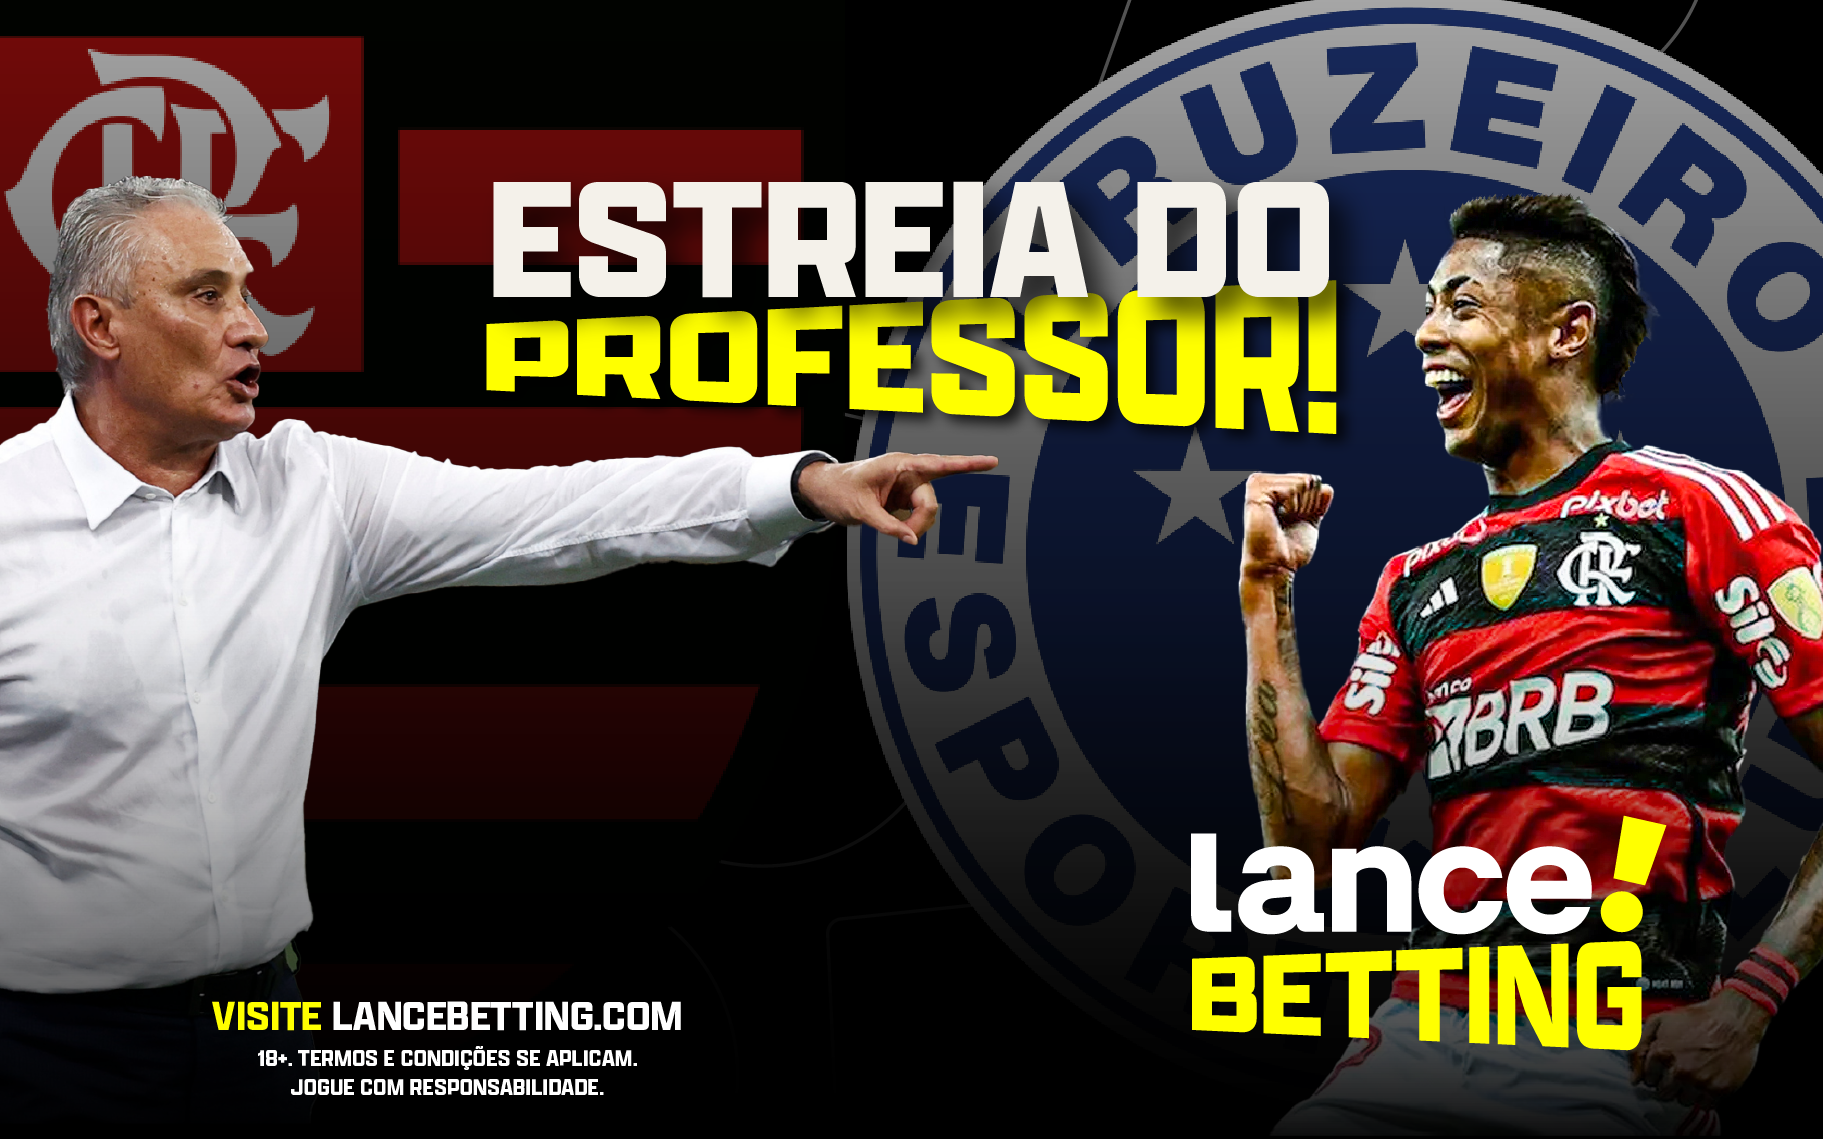 Na estreia de Tite, Flamengo vence e deixa Cruzeiro à beira do Z4